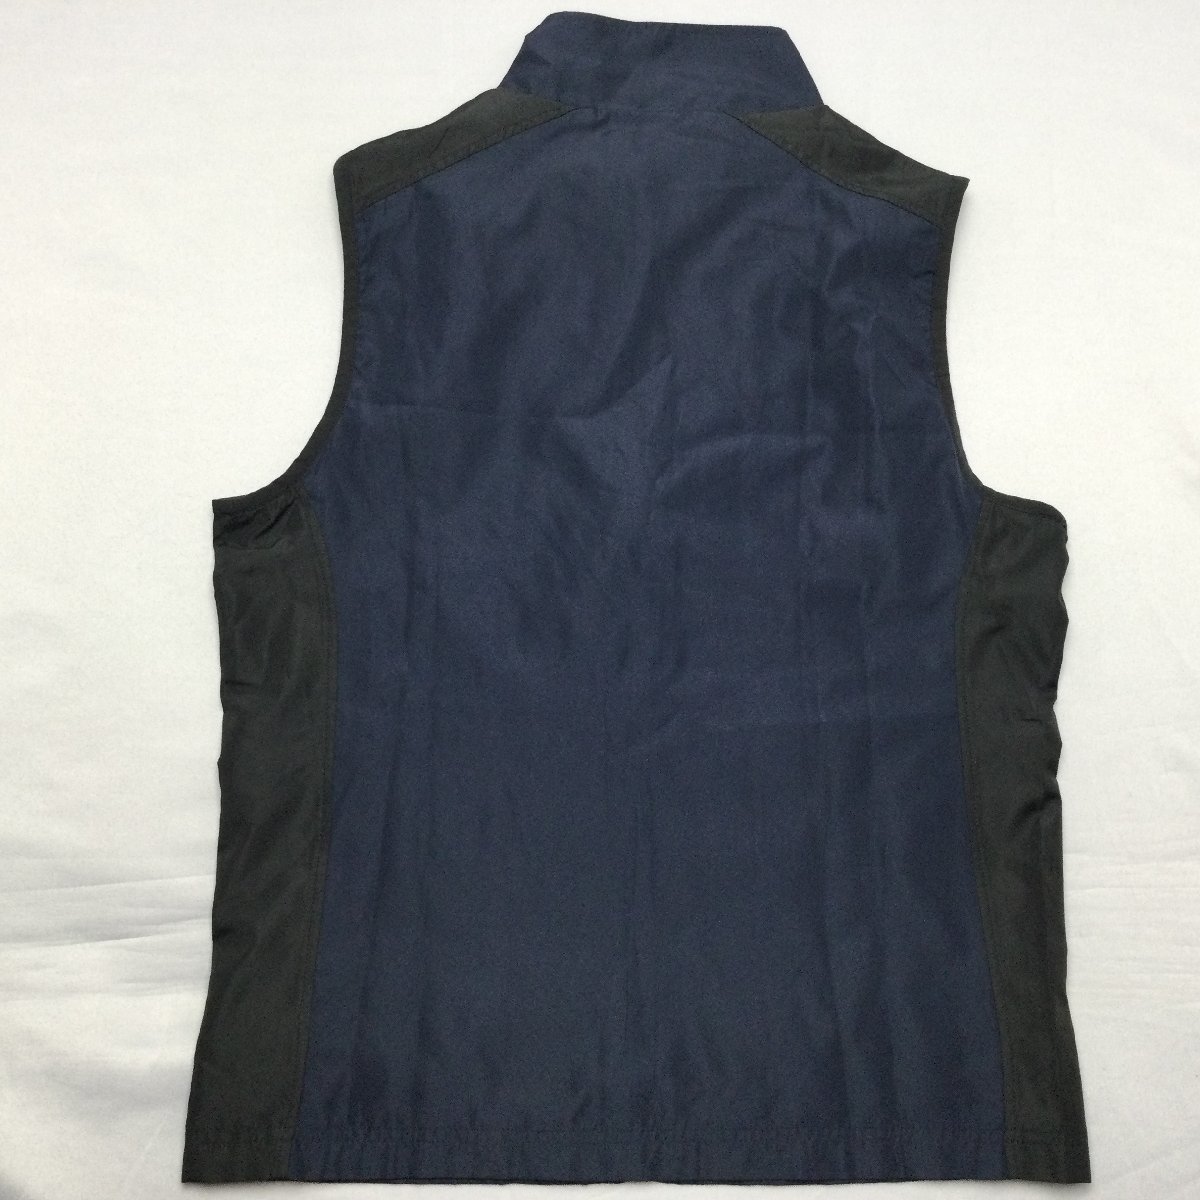 [ бесплатная доставка ][ новый товар ]Lynx мужской футболка с длинным рукавом имеется лучший M темно-синий *23391